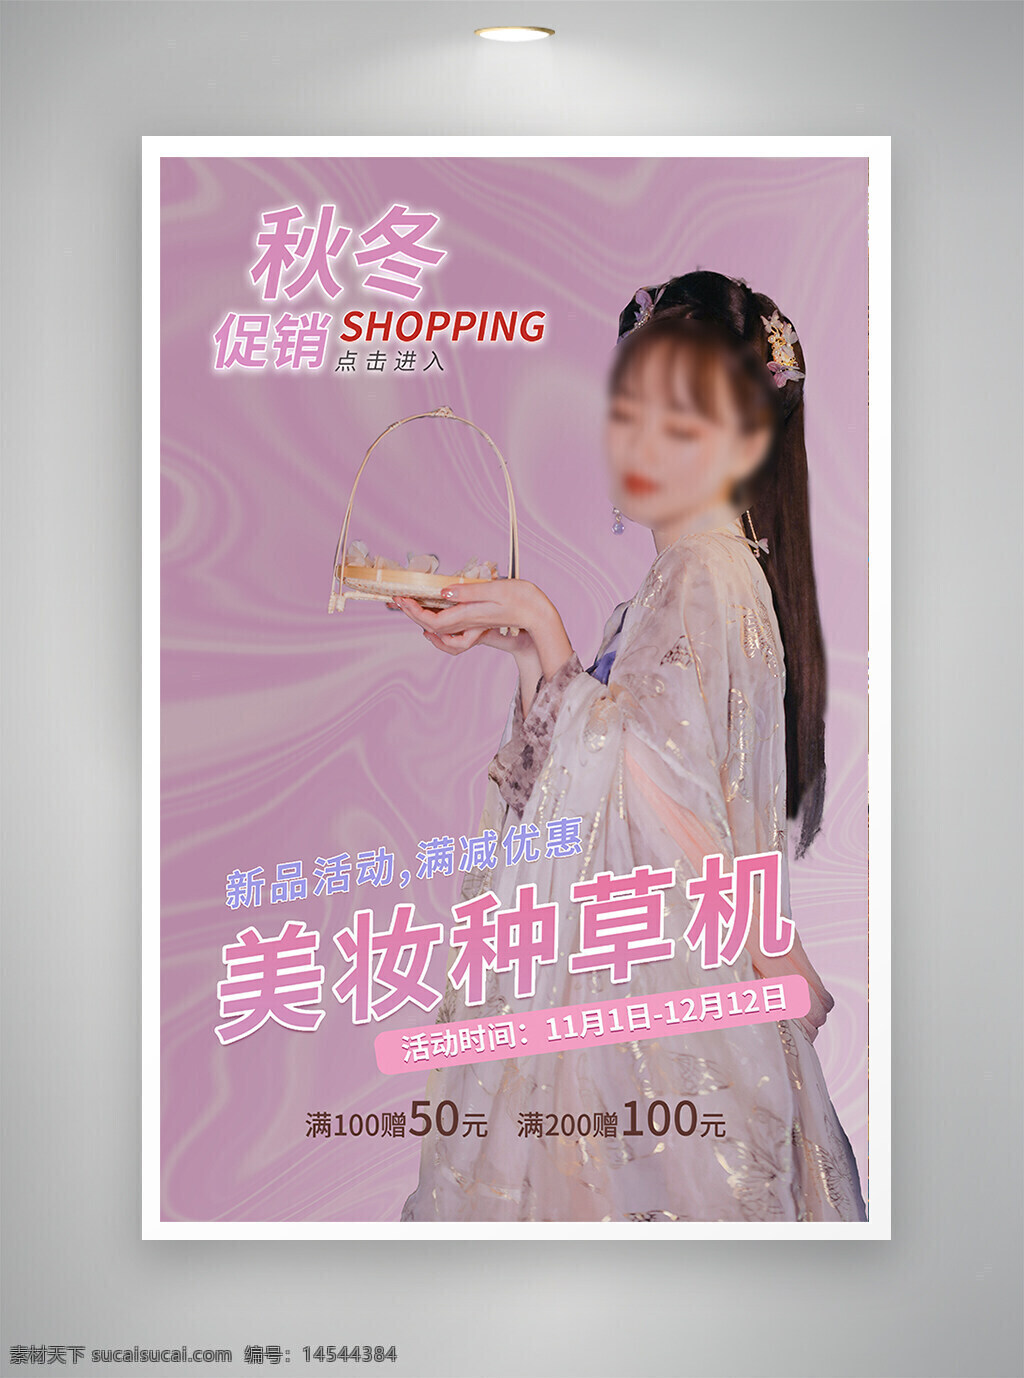 中国风海报 古风海报 节日海报 促销海报 美妆海报